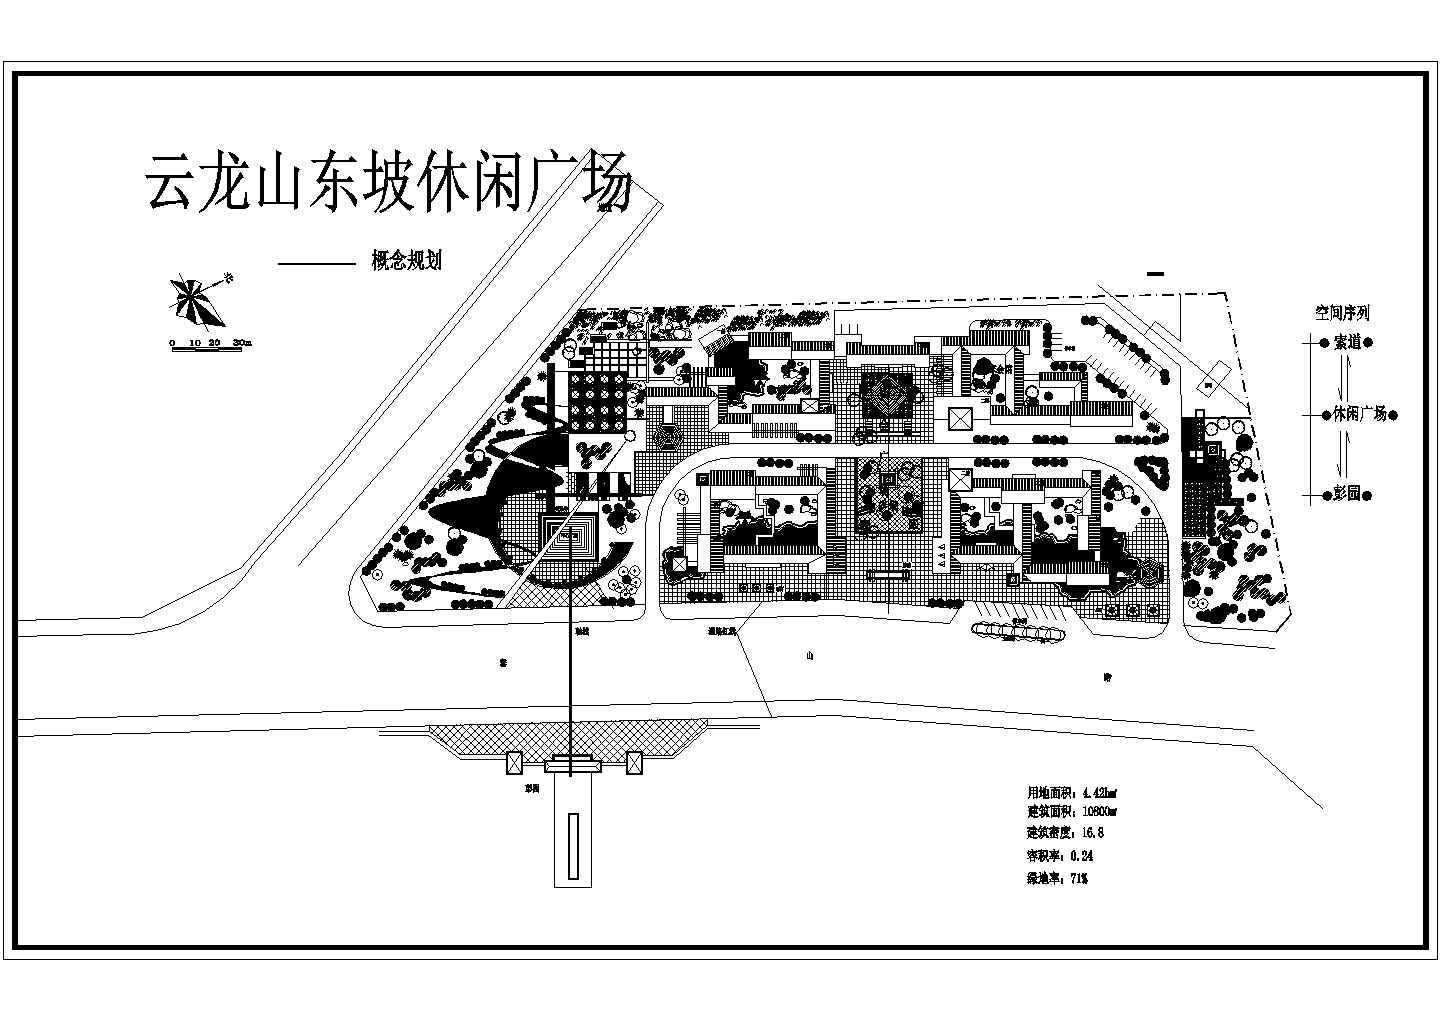 云龙山东坡休闲广场景观概念规划图